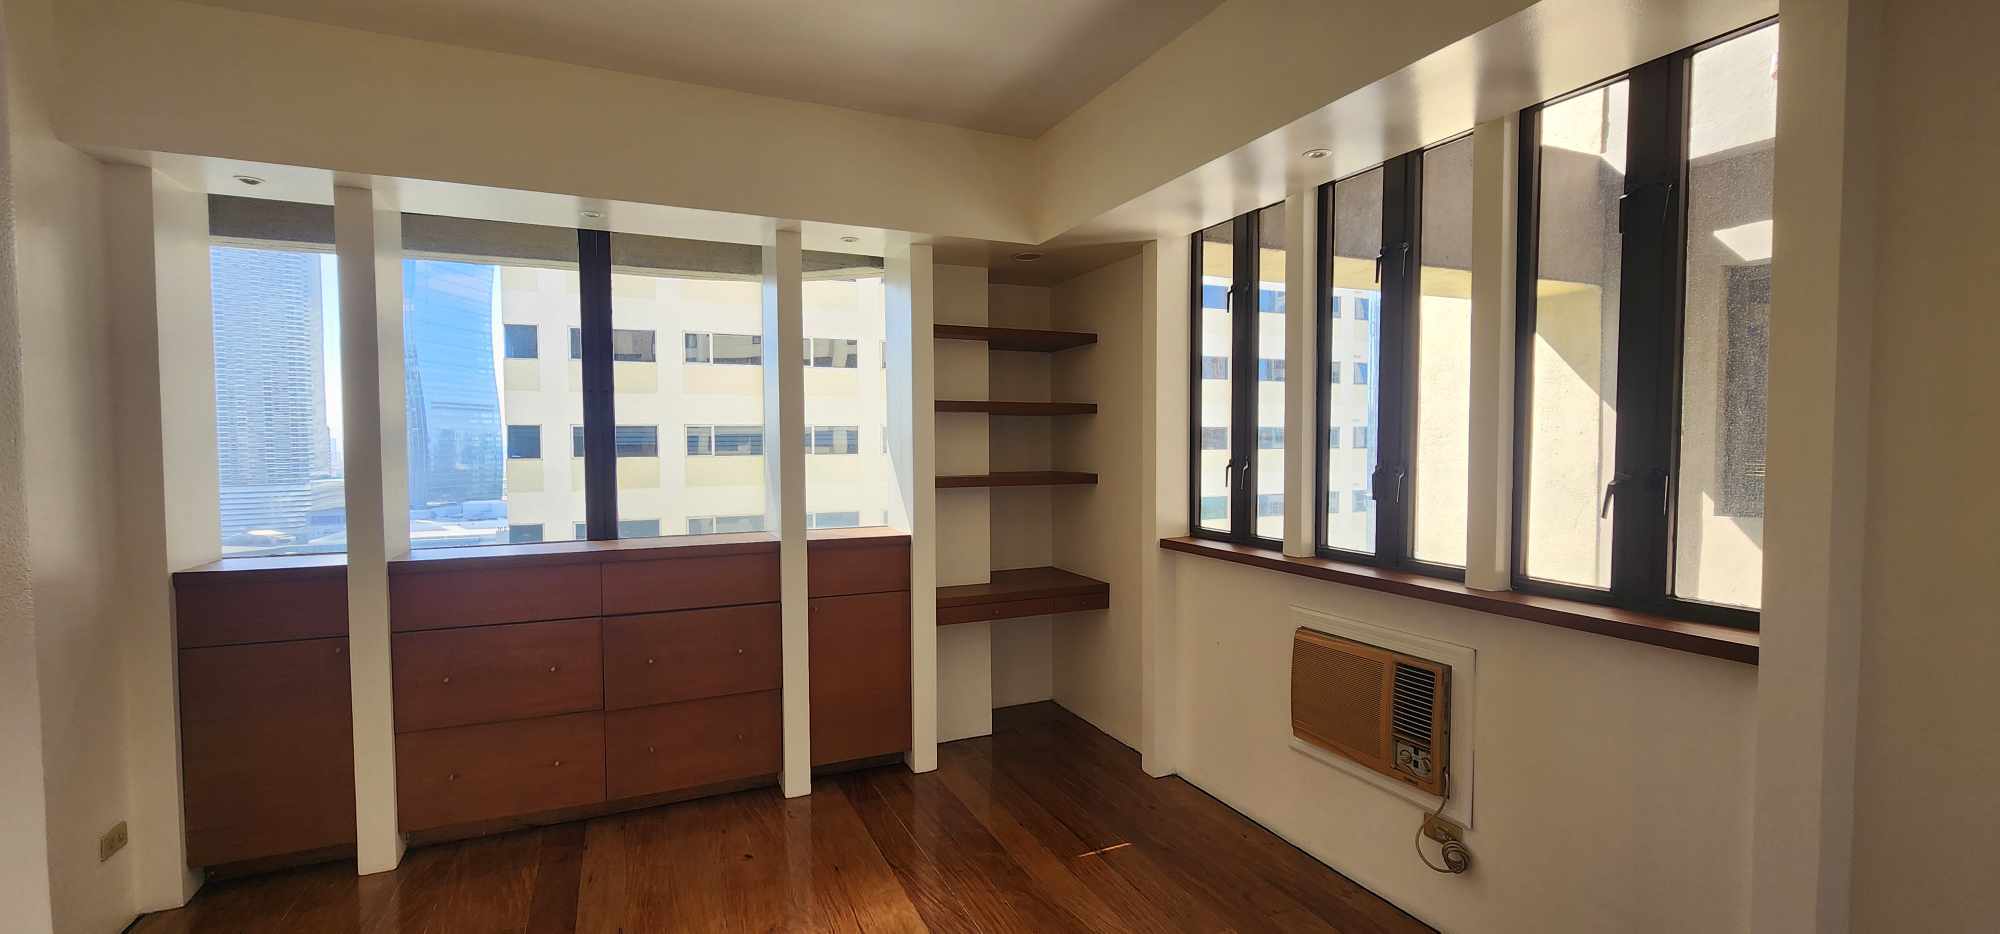 3 Bed Room Residential Condominium For Sale Ortigas CBD Pasig